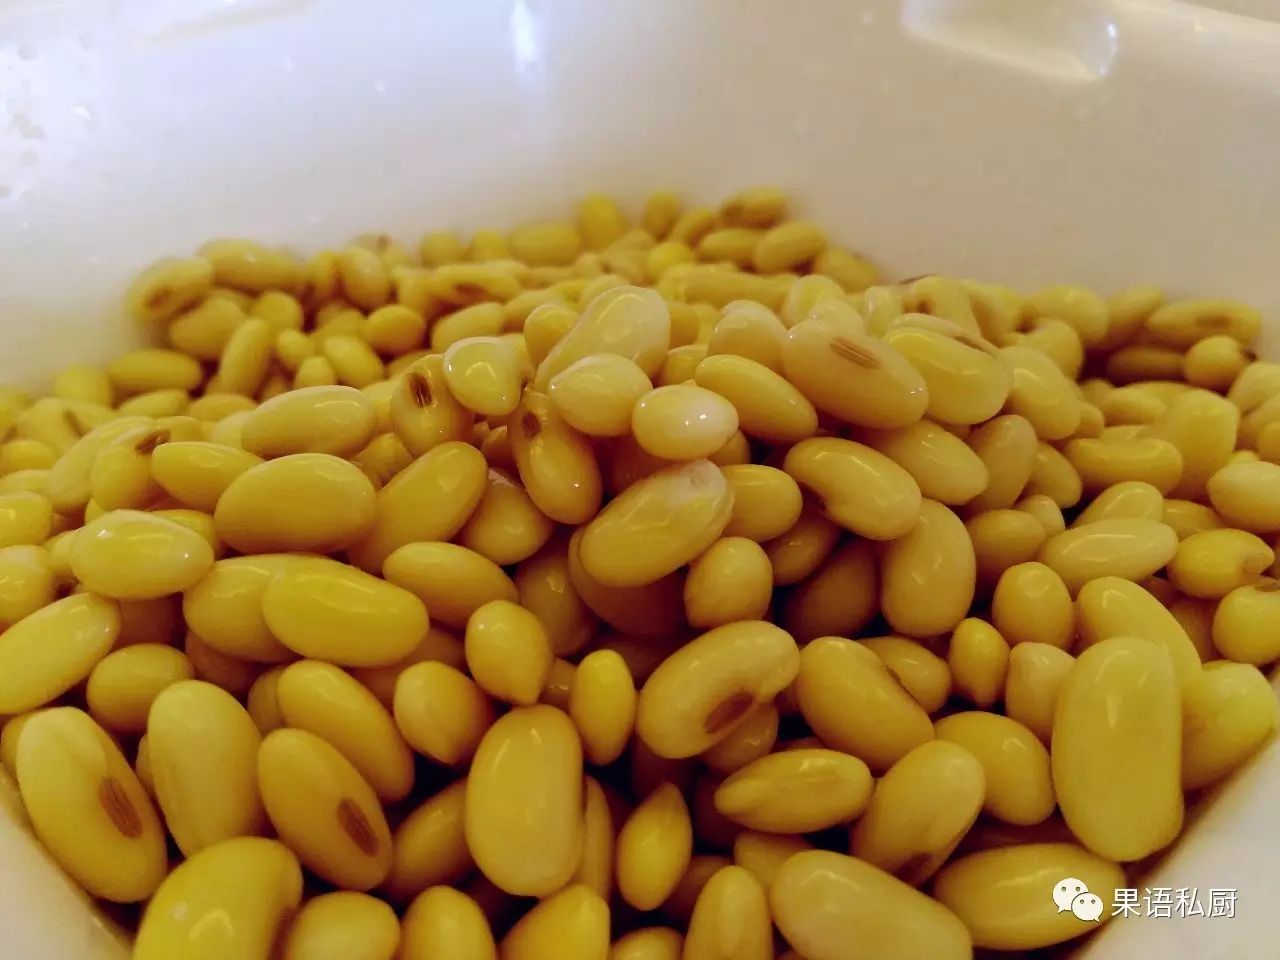 1.黄豆冷水浸泡一夜,春夏浸泡时间减短,浸泡后清除杂质及变质的黄豆.